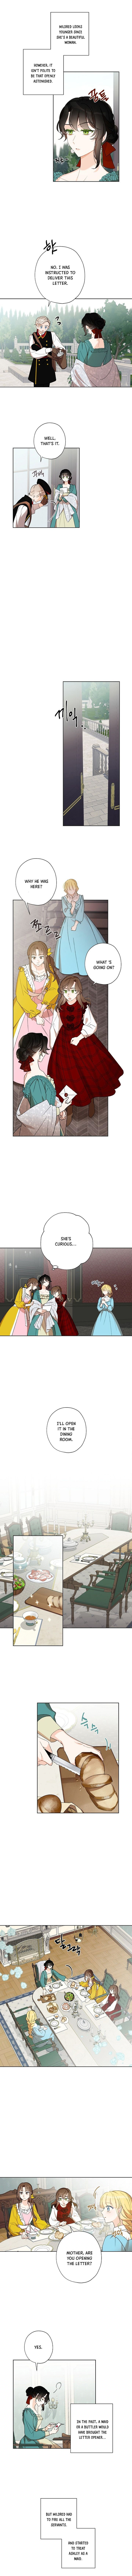 I Raised Cinderella Preciously - Page 4